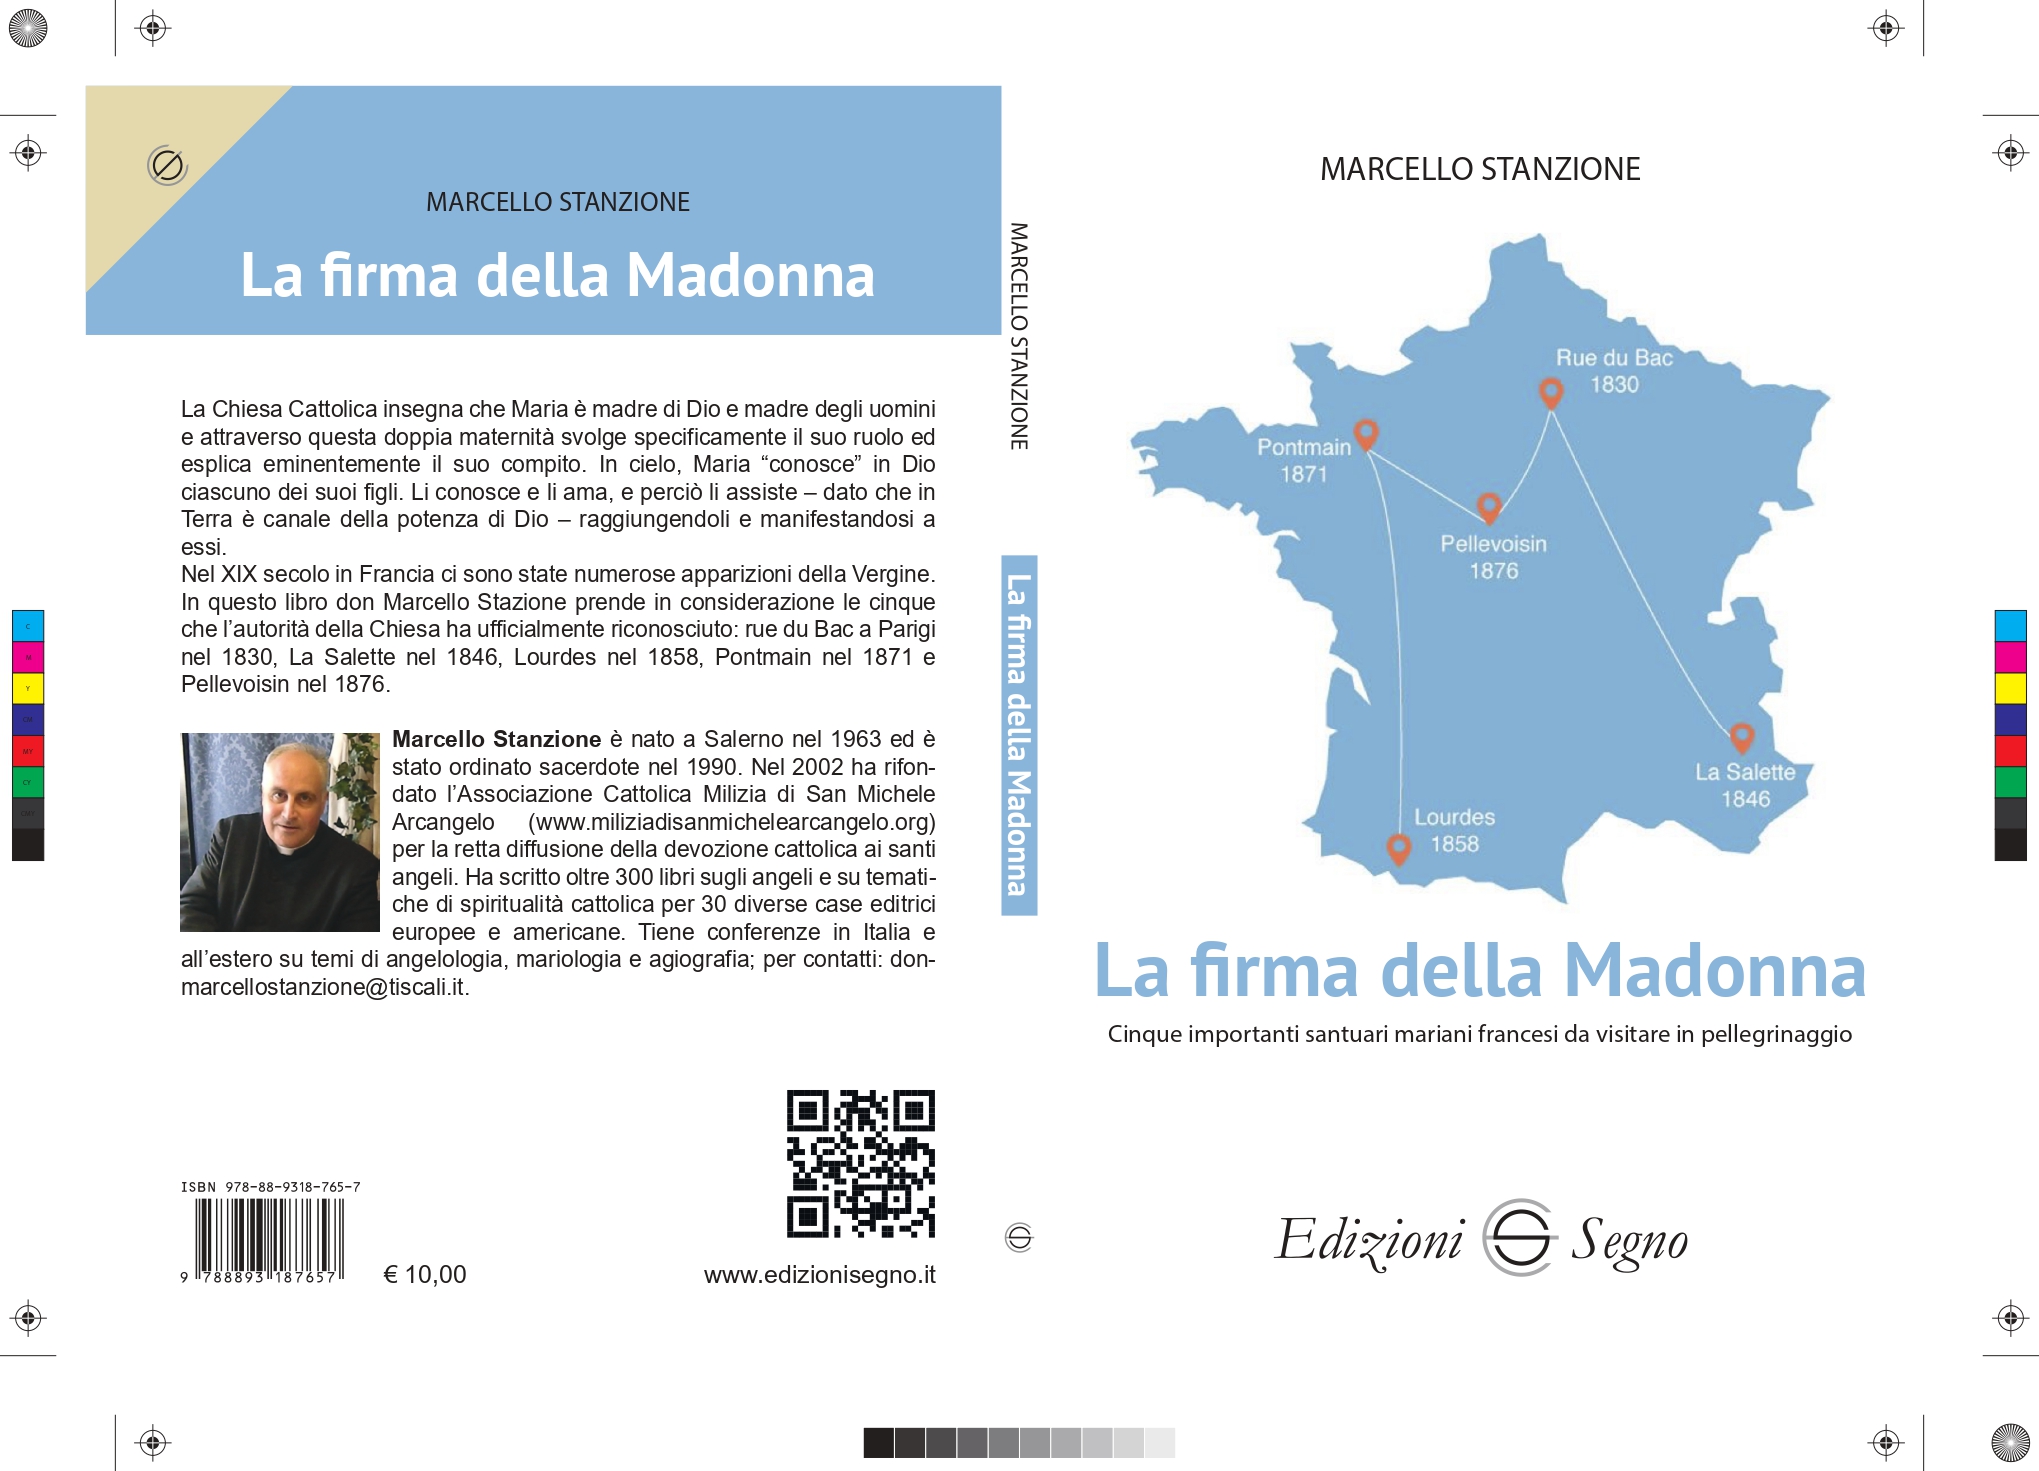 5 apparizioni e 5 Santuari in Francia nel libro “La firma della Madonna”